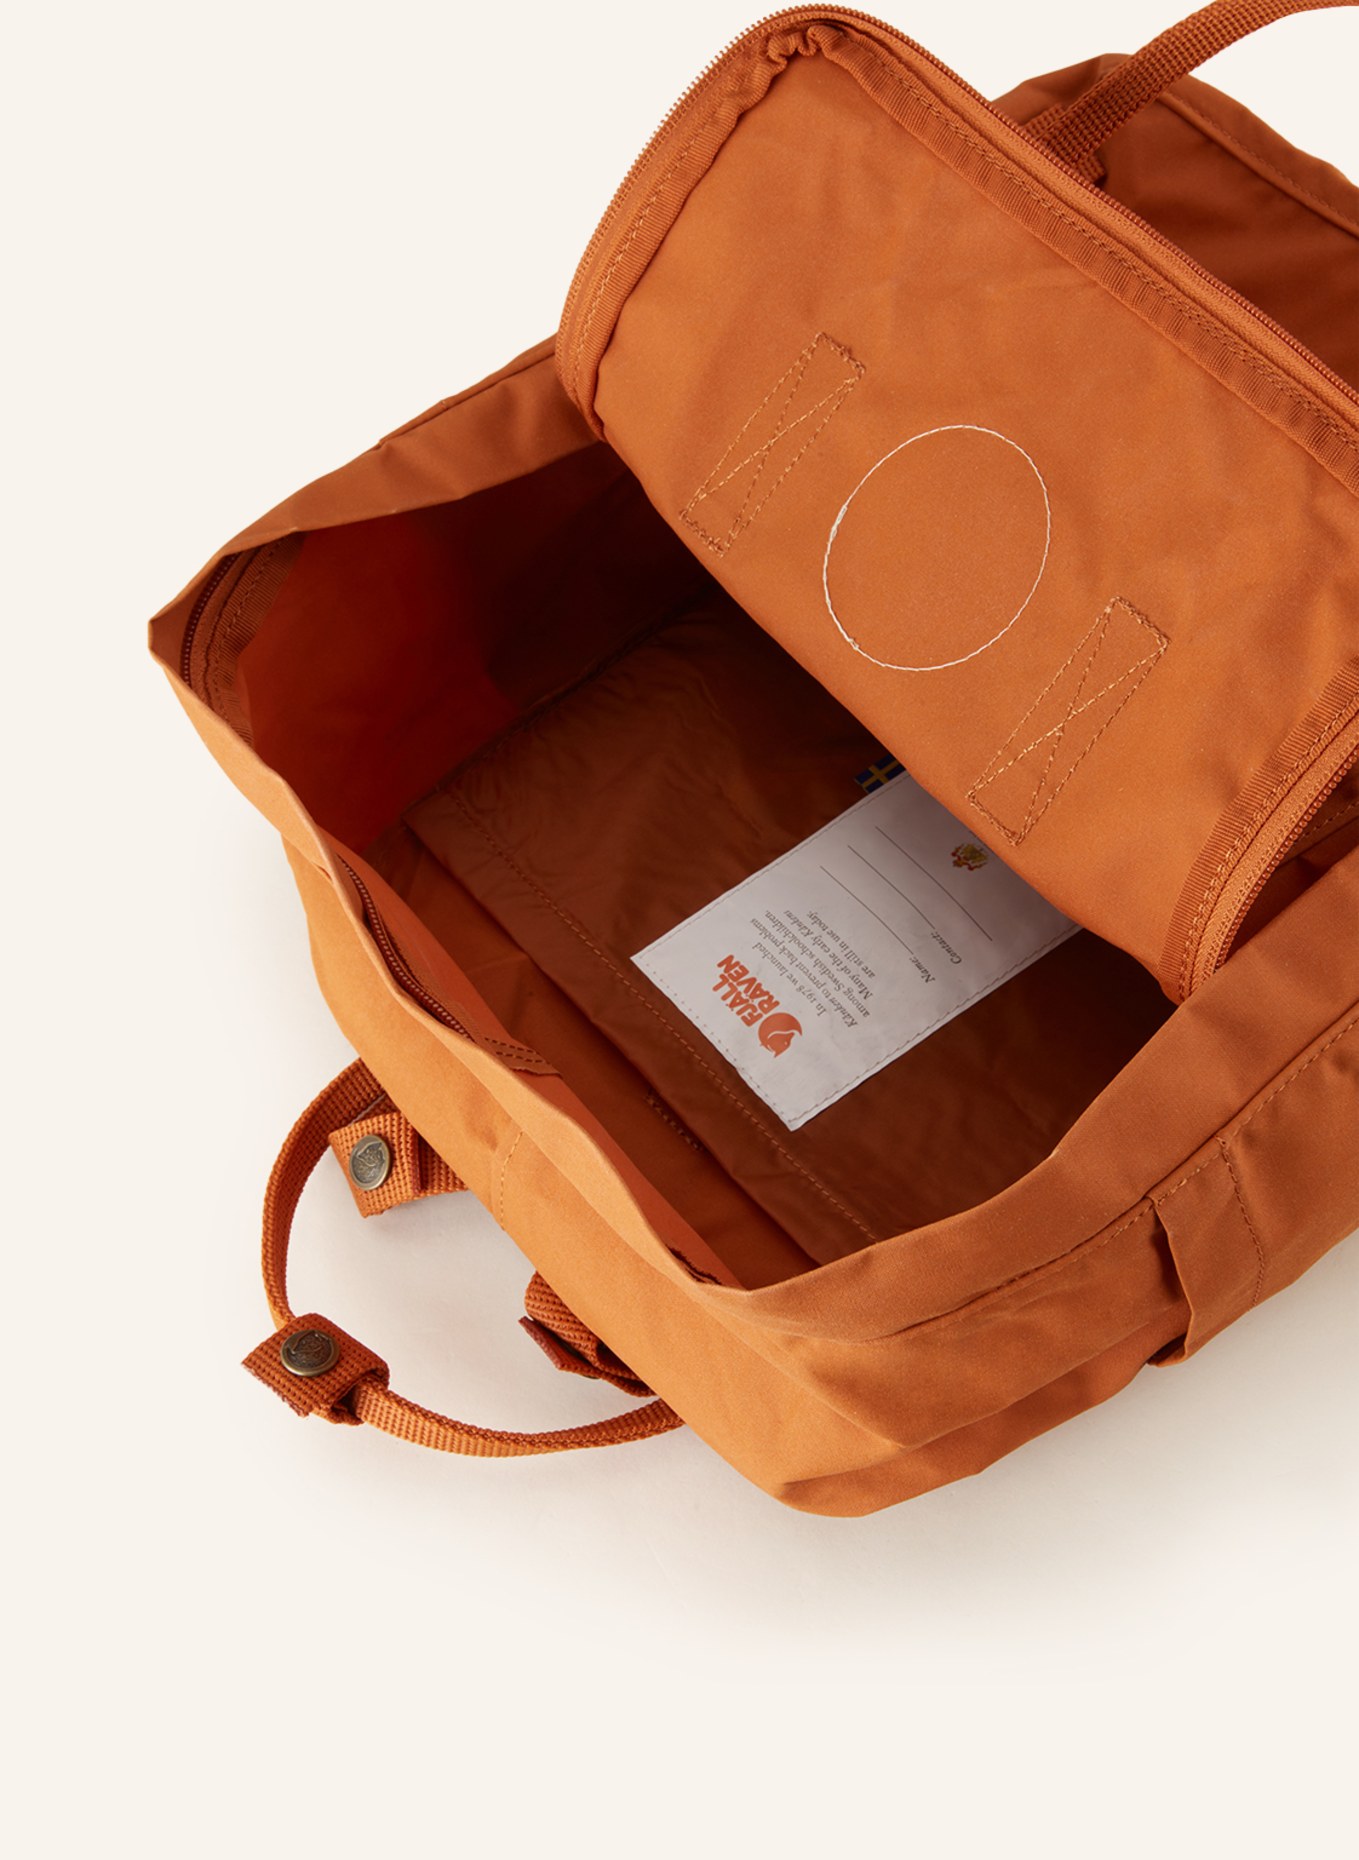 FJÄLLRÄVEN Backpack KANKEN 16 l, Color: 243 Desert Brown (Image 3)